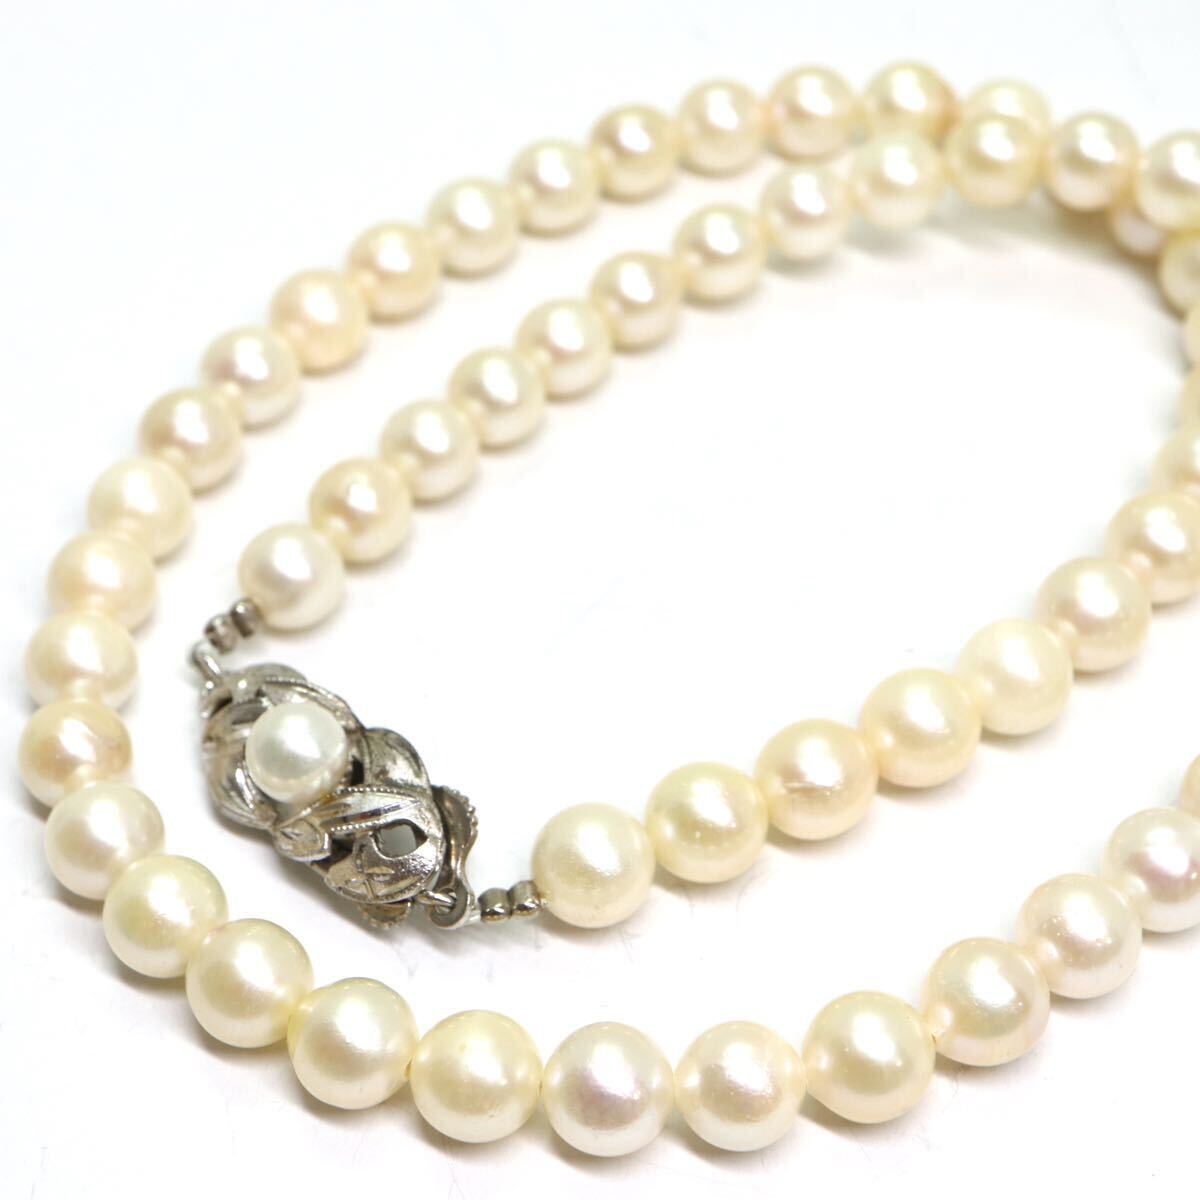 《アコヤ本真珠ネックレス》A 約6.0-6.5mm珠 22.0g 約39cm pearl necklace ジュエリー jewelry DB0/DBの画像1